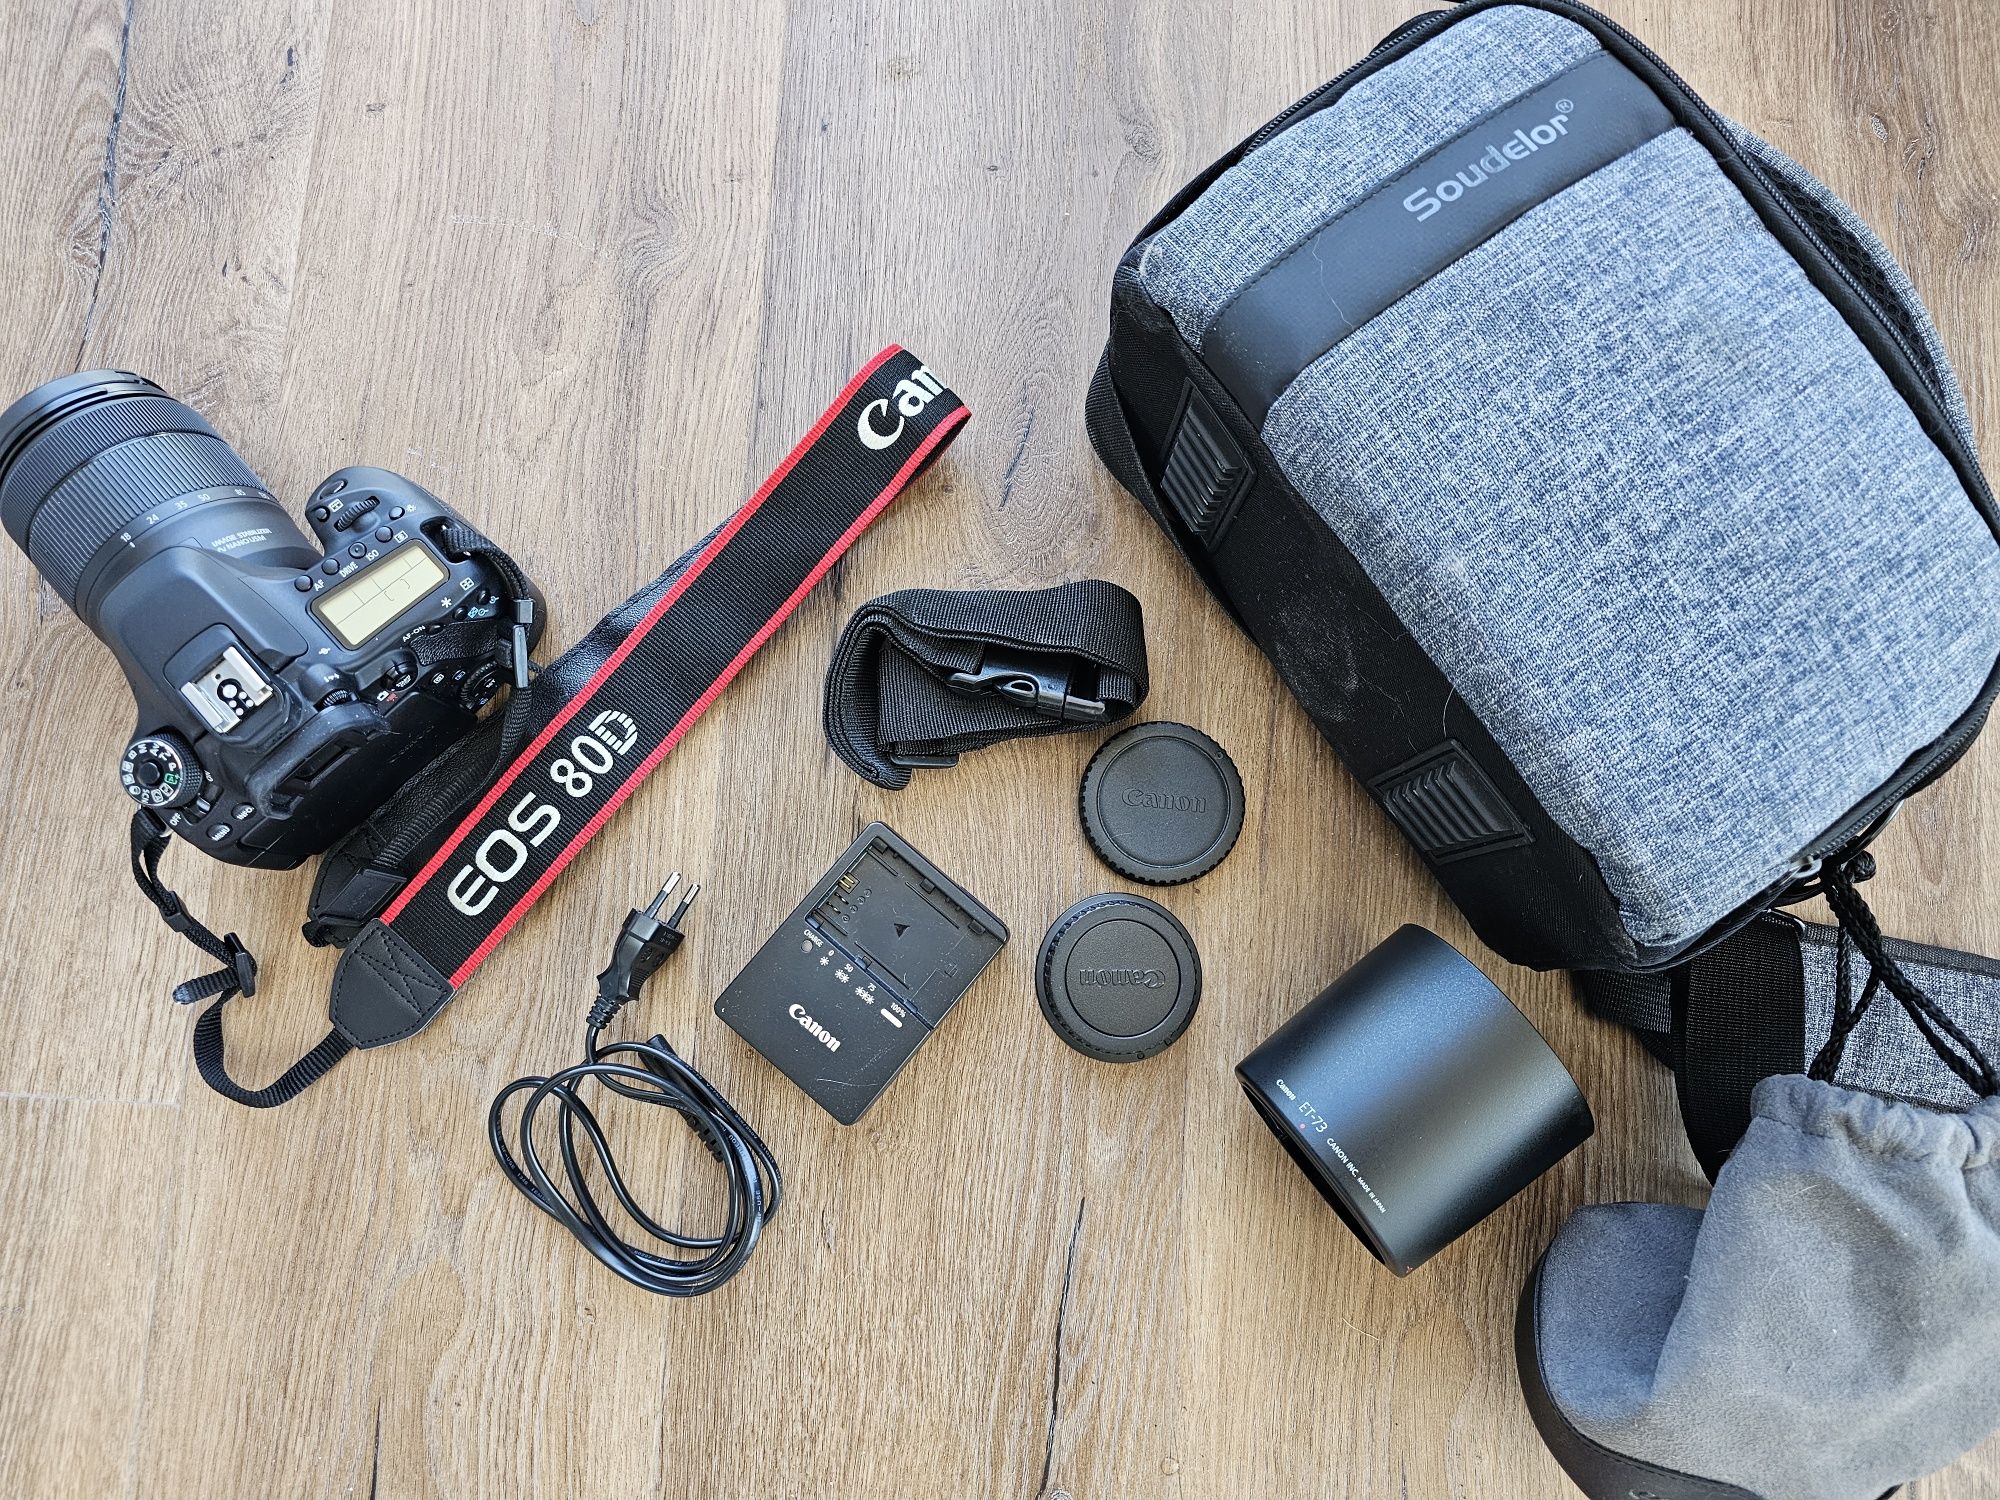 Дзеркальний фотоапарат Canon EOS 80D kit (18-135mm))